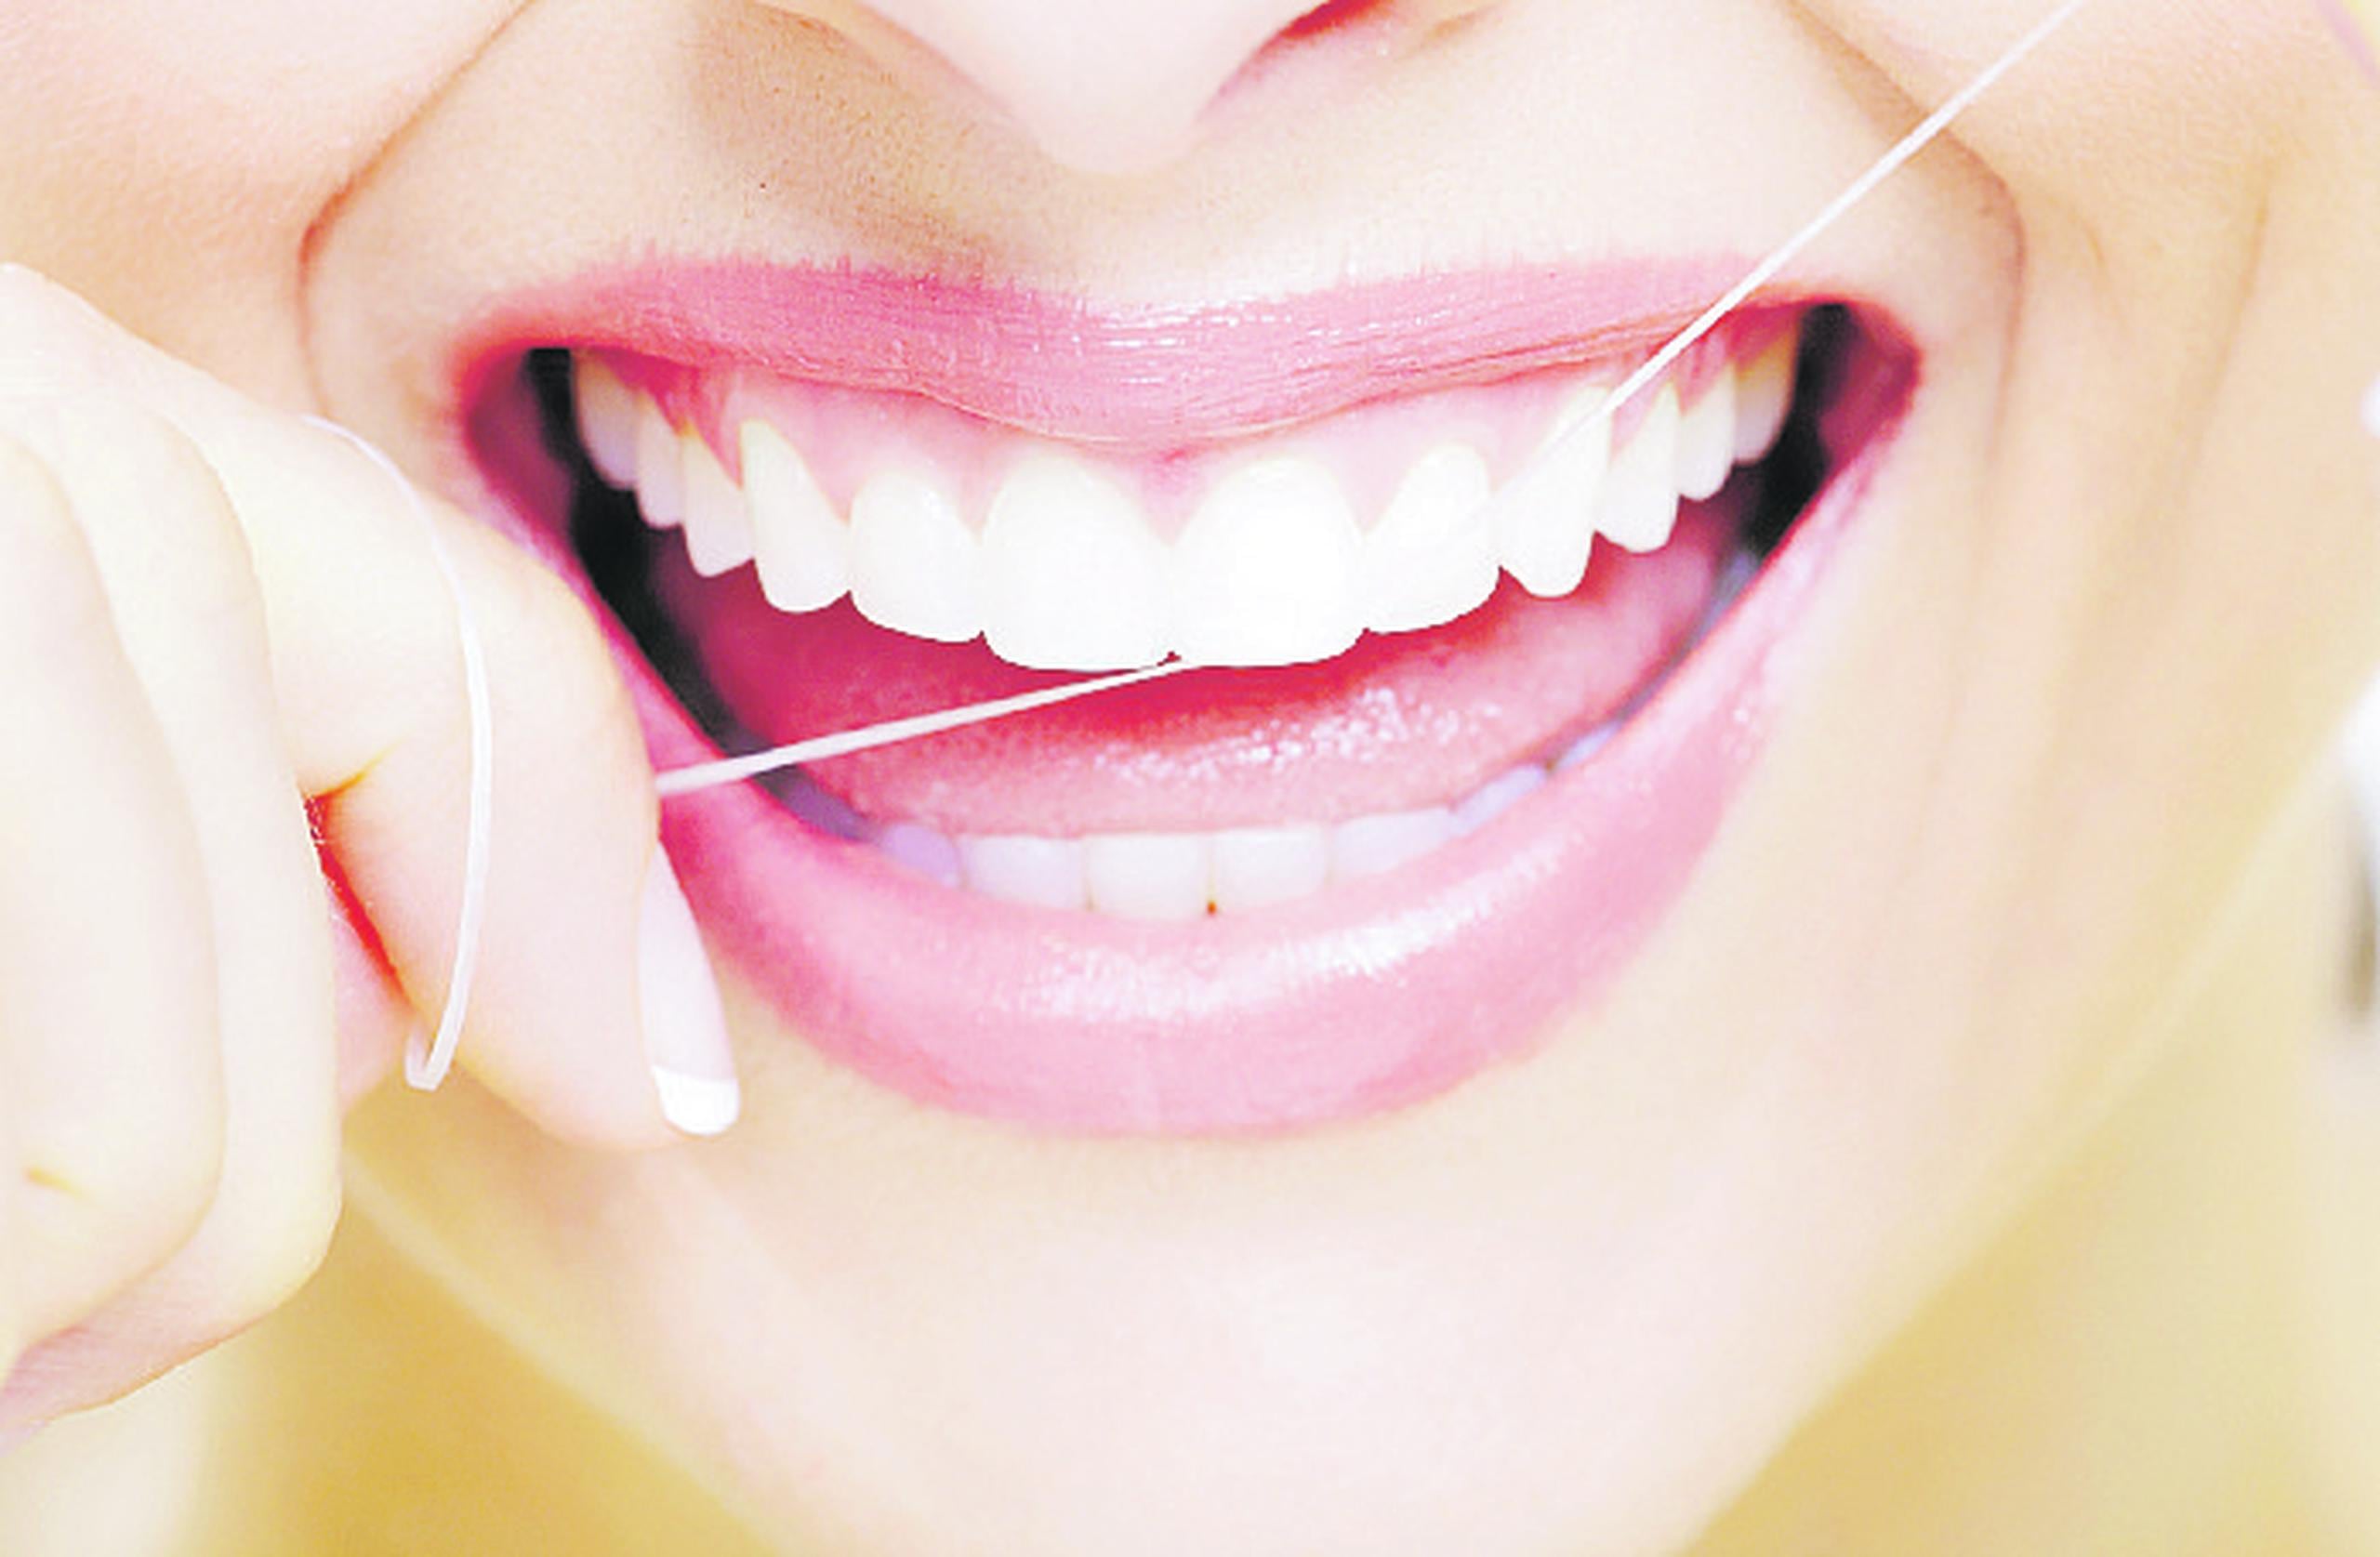 El uso del hilo dental diariamente asegura una mejor salud oral y general.